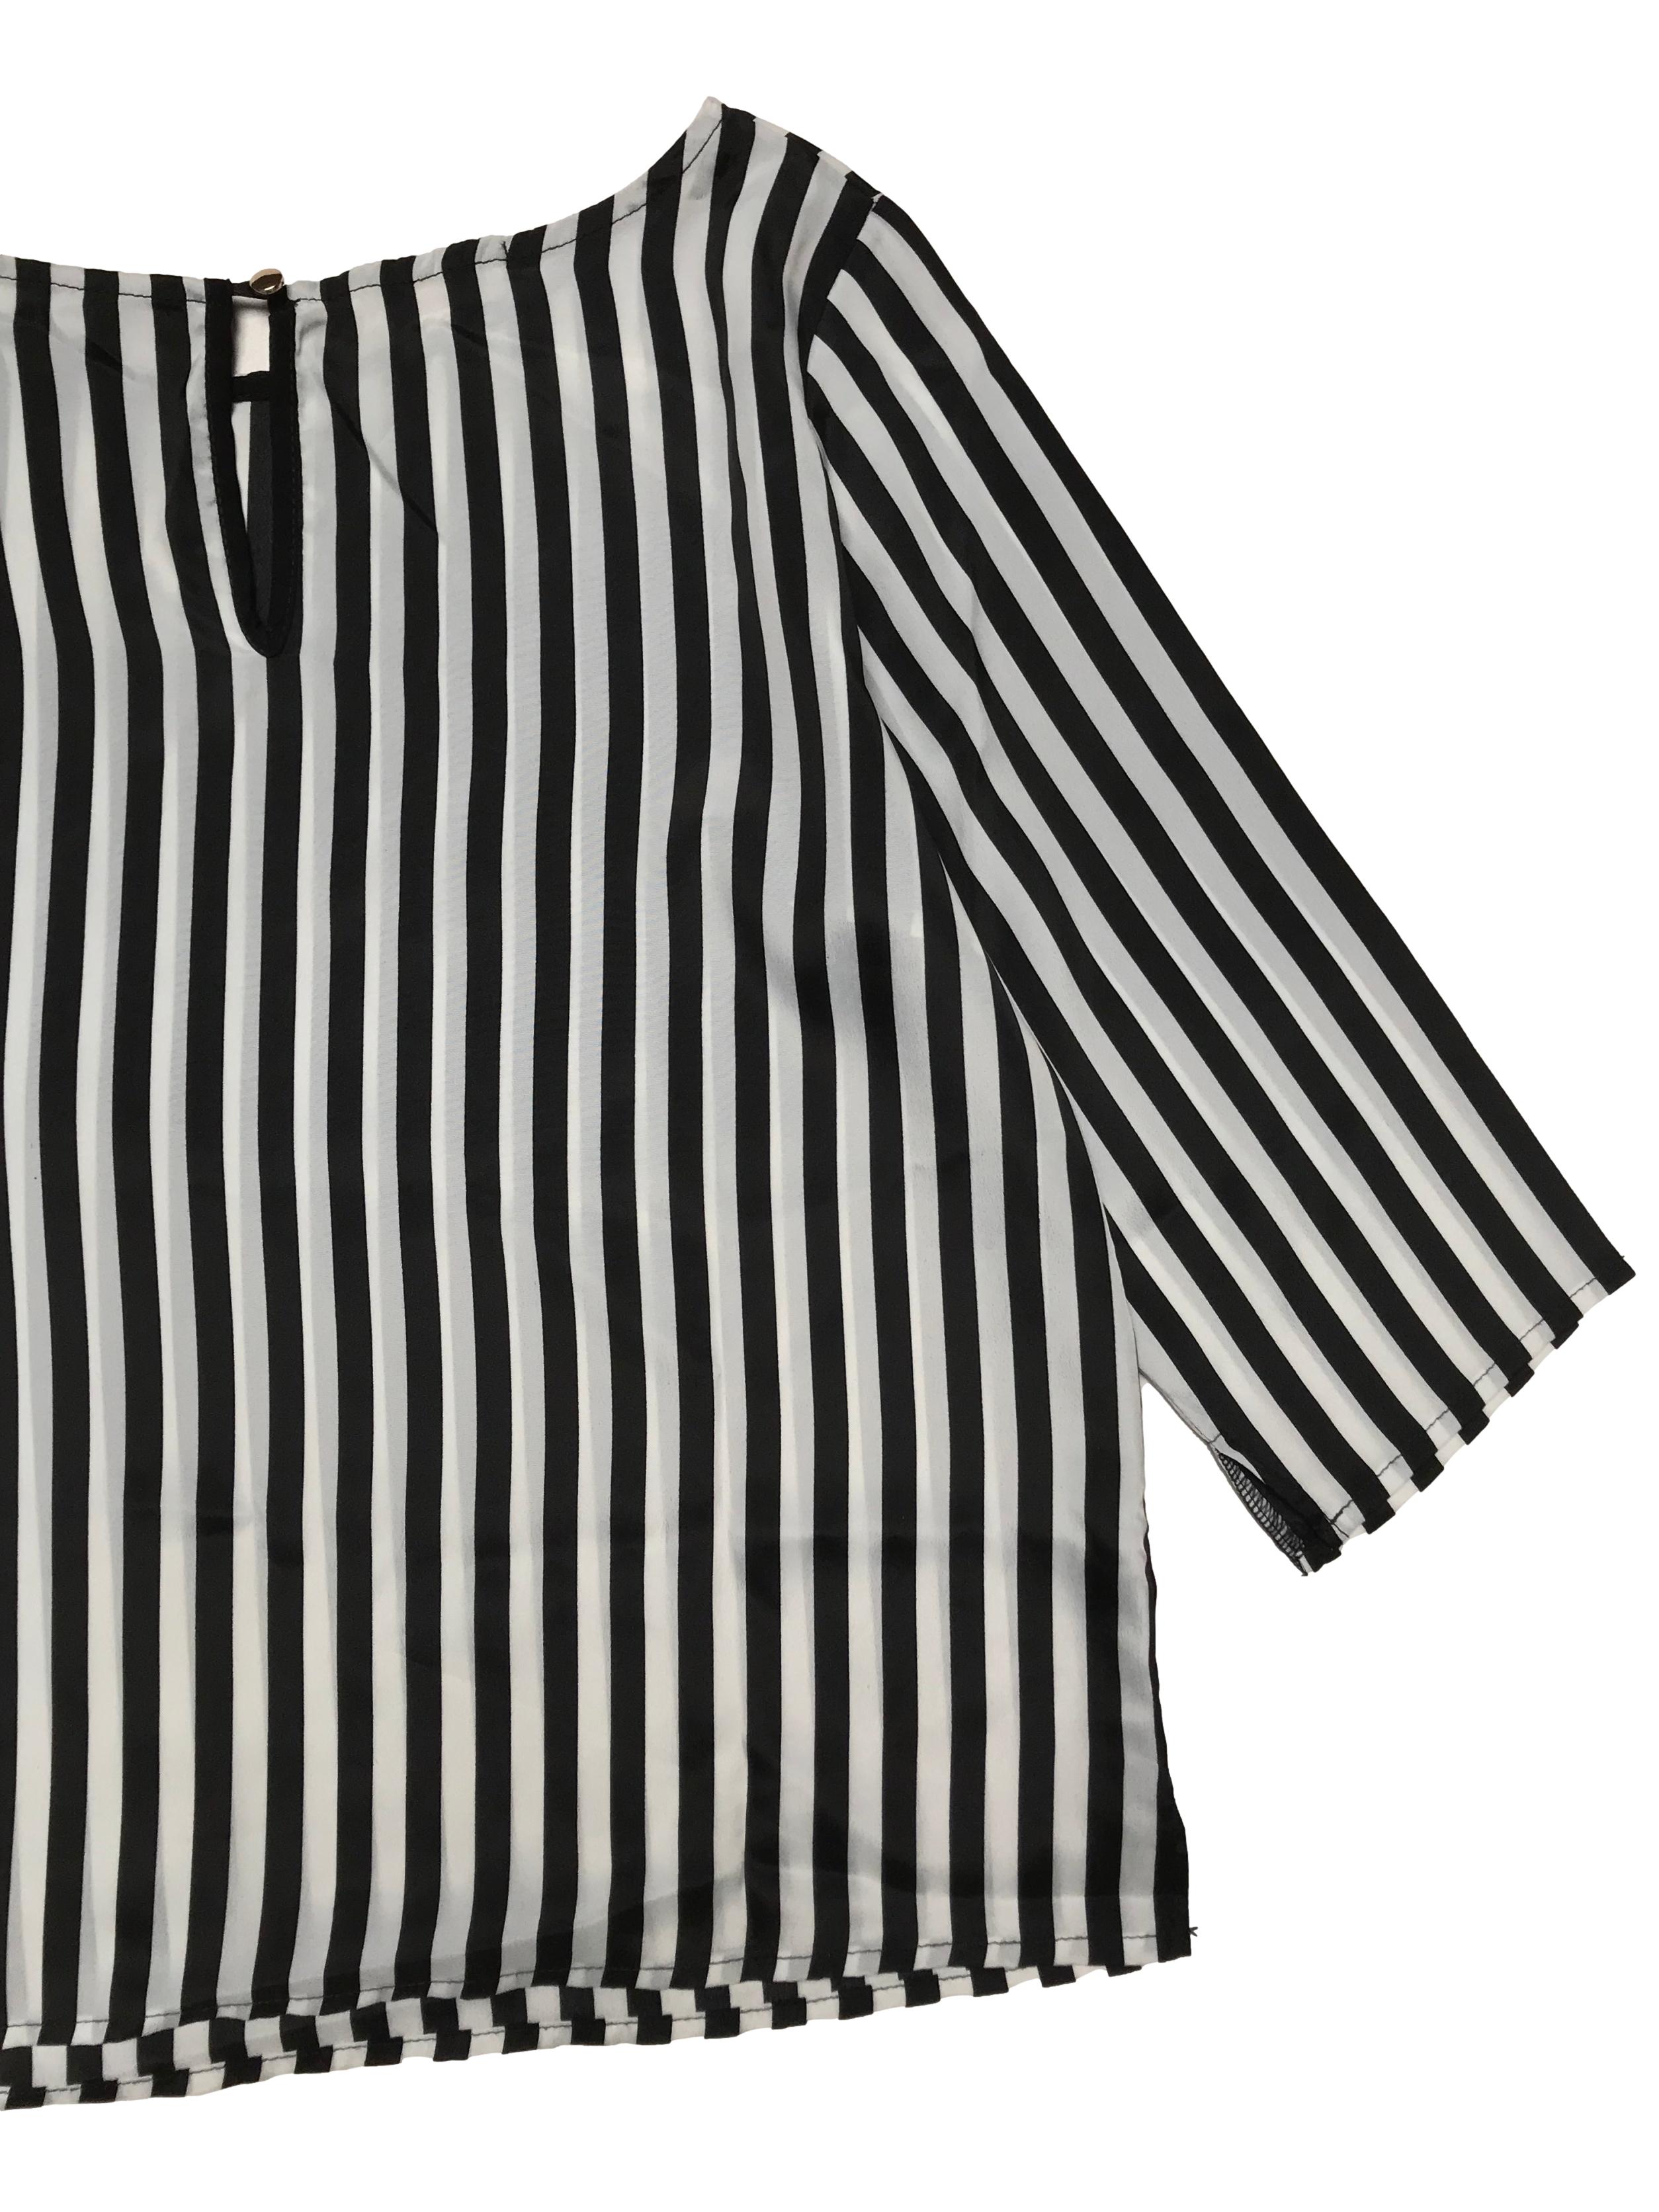 Blusa Settimana a rayas blancas y negras, manga 3/4, cuello con botón posterior. Ancho 98cm Largo 55cm